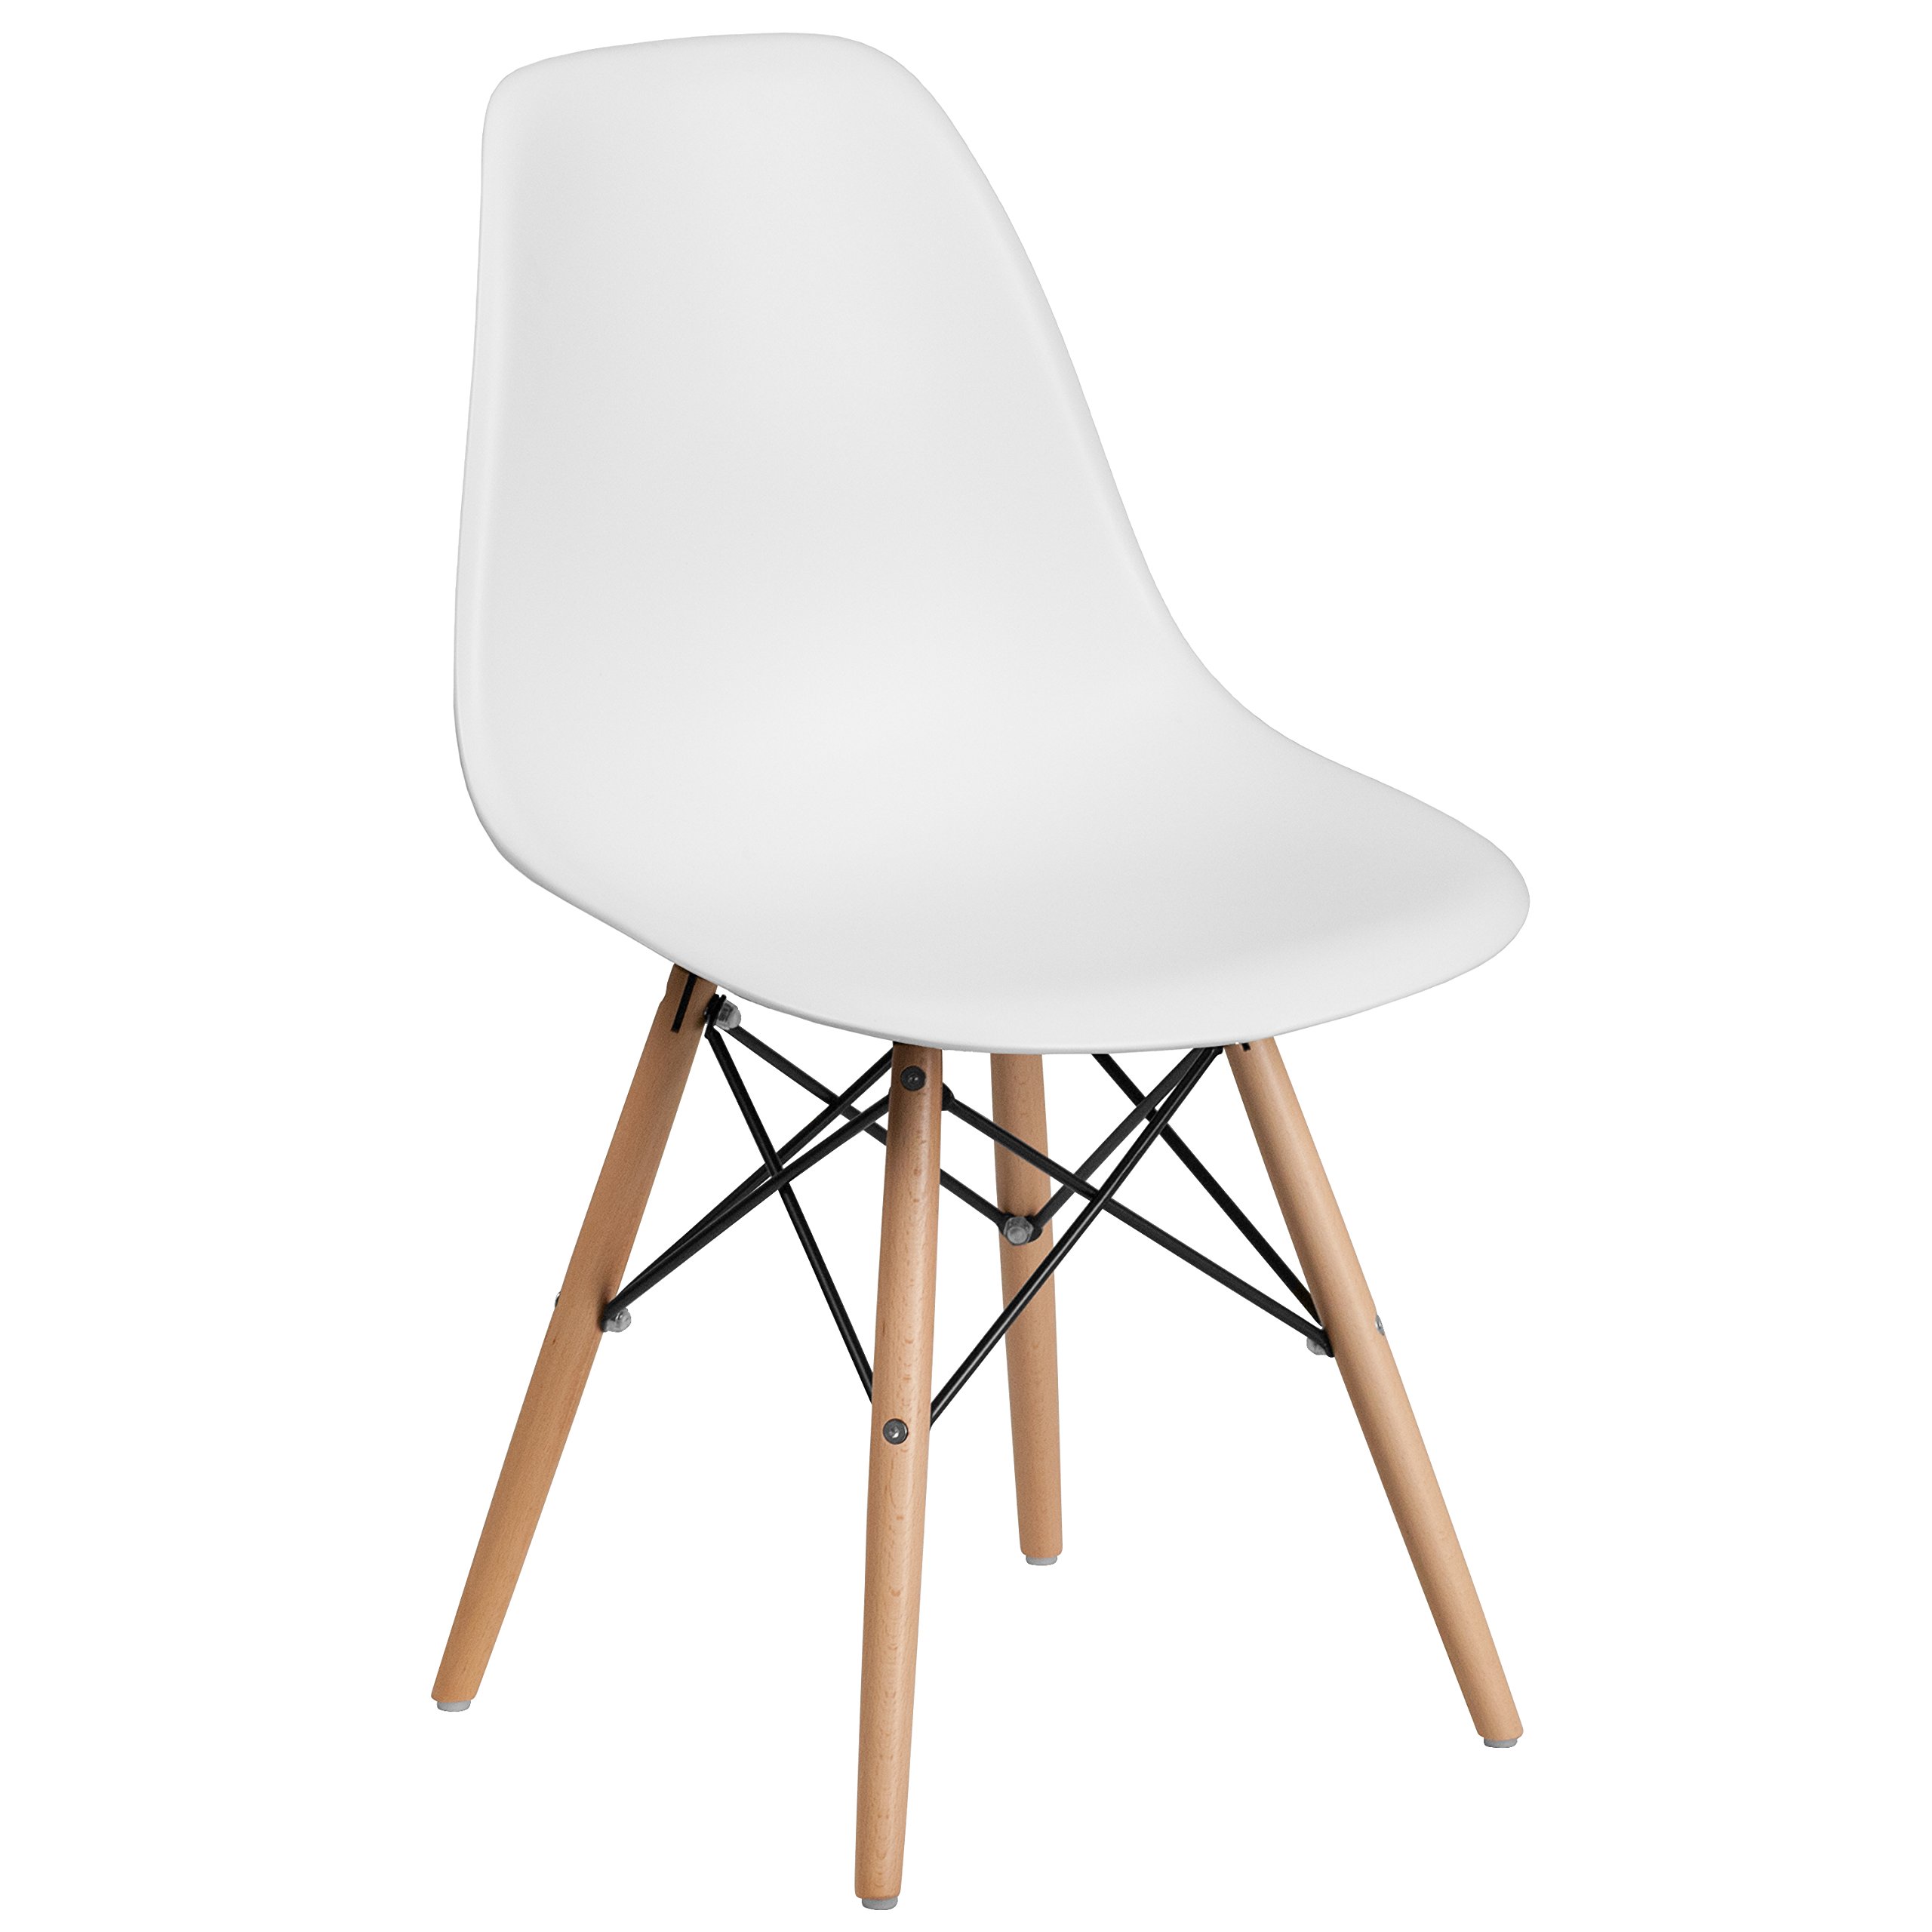 Սպիտակ պլաստիկ աթոռ փայտե ոտքերով տան դեկոր